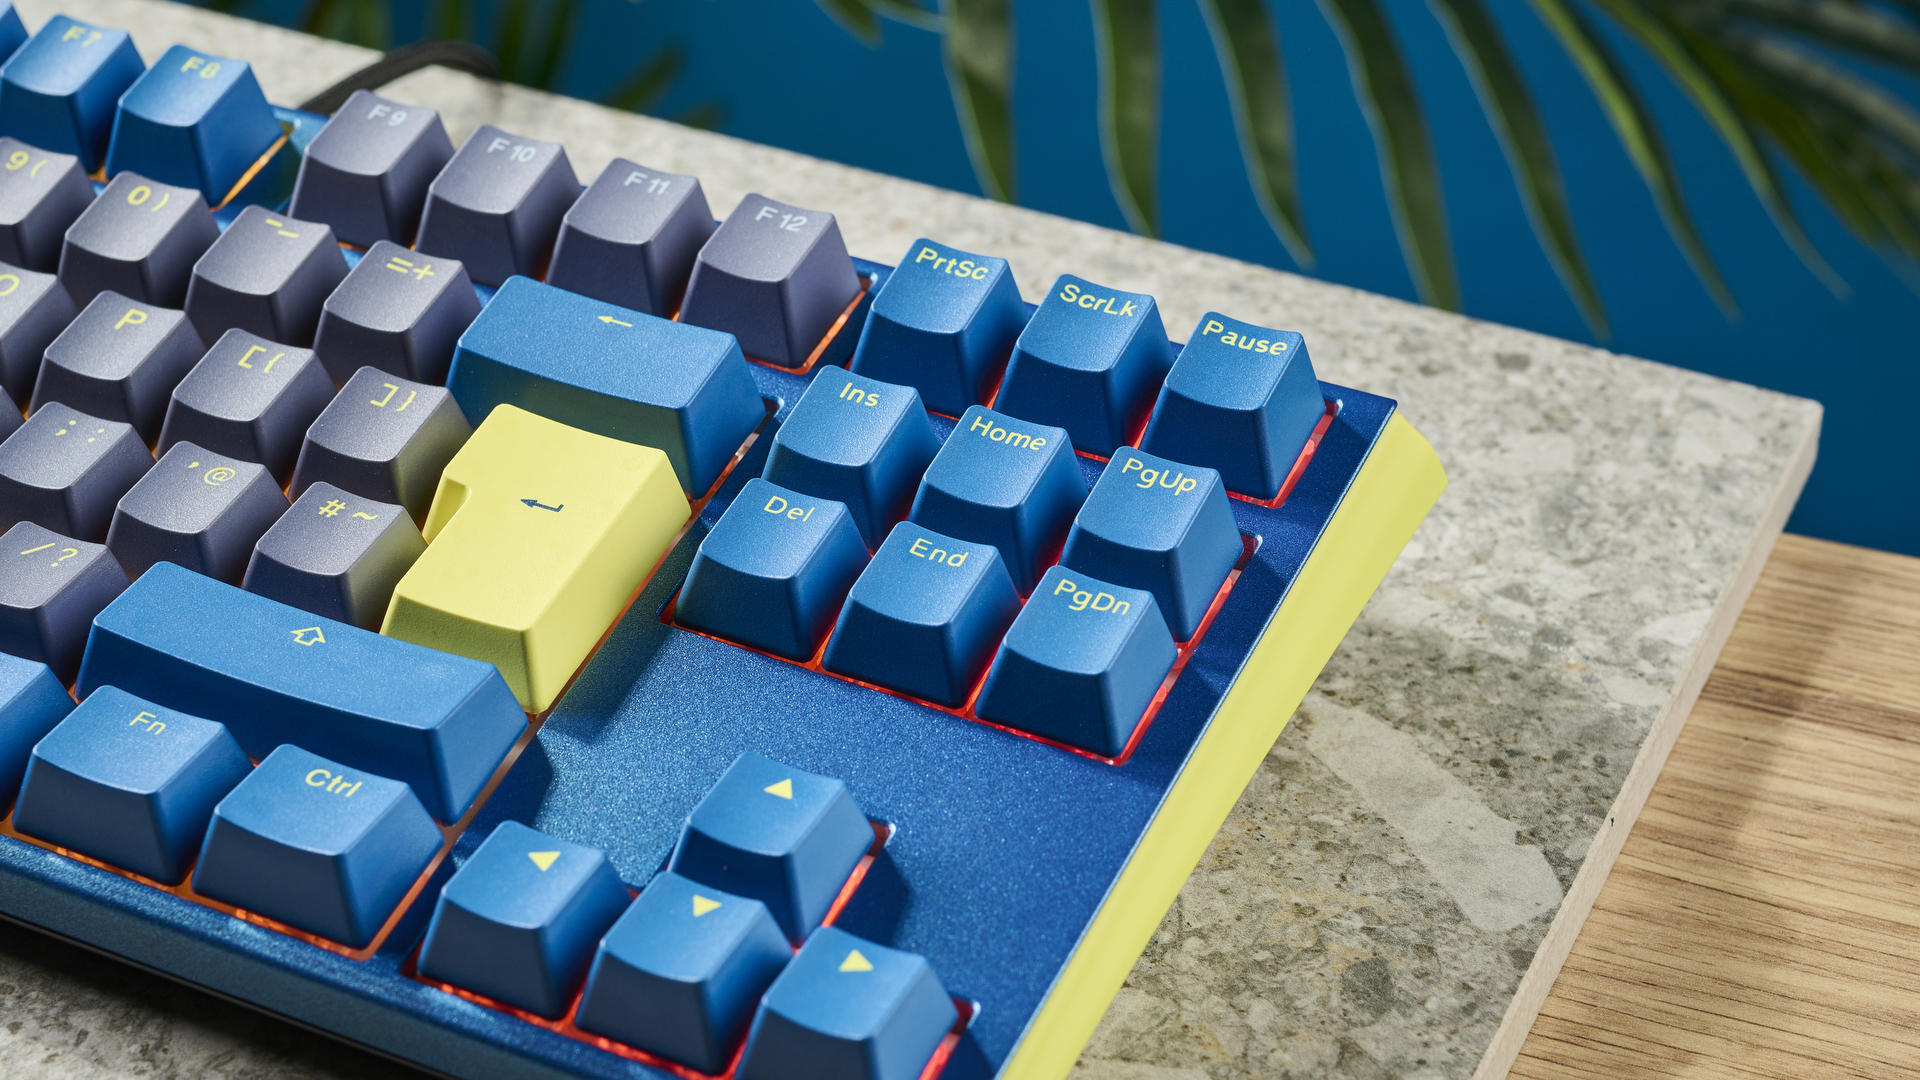 A Ducky One 3 TKL wireless keyboard in the DayBreak colorway